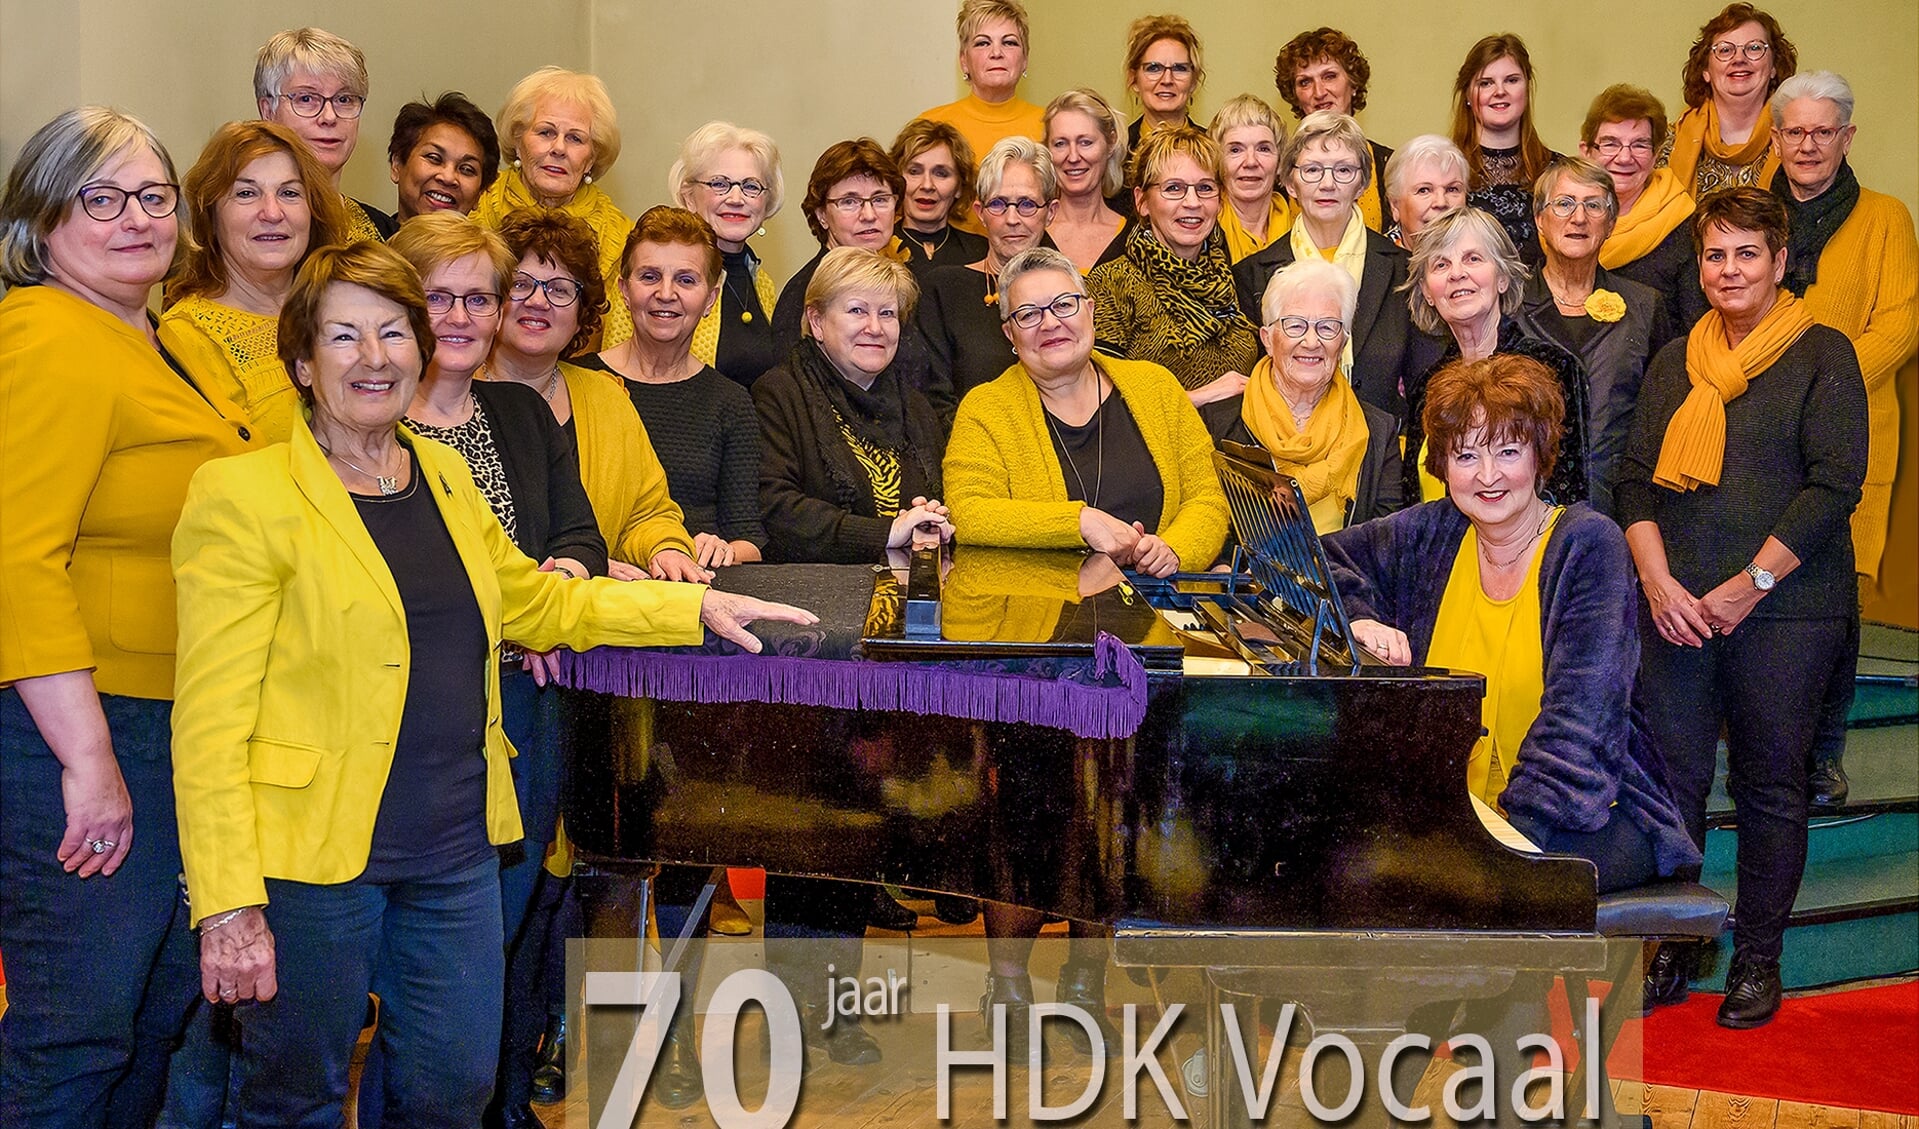 Het 70-jarig bestaan van het vrouwenkoor HDK Vocaal.